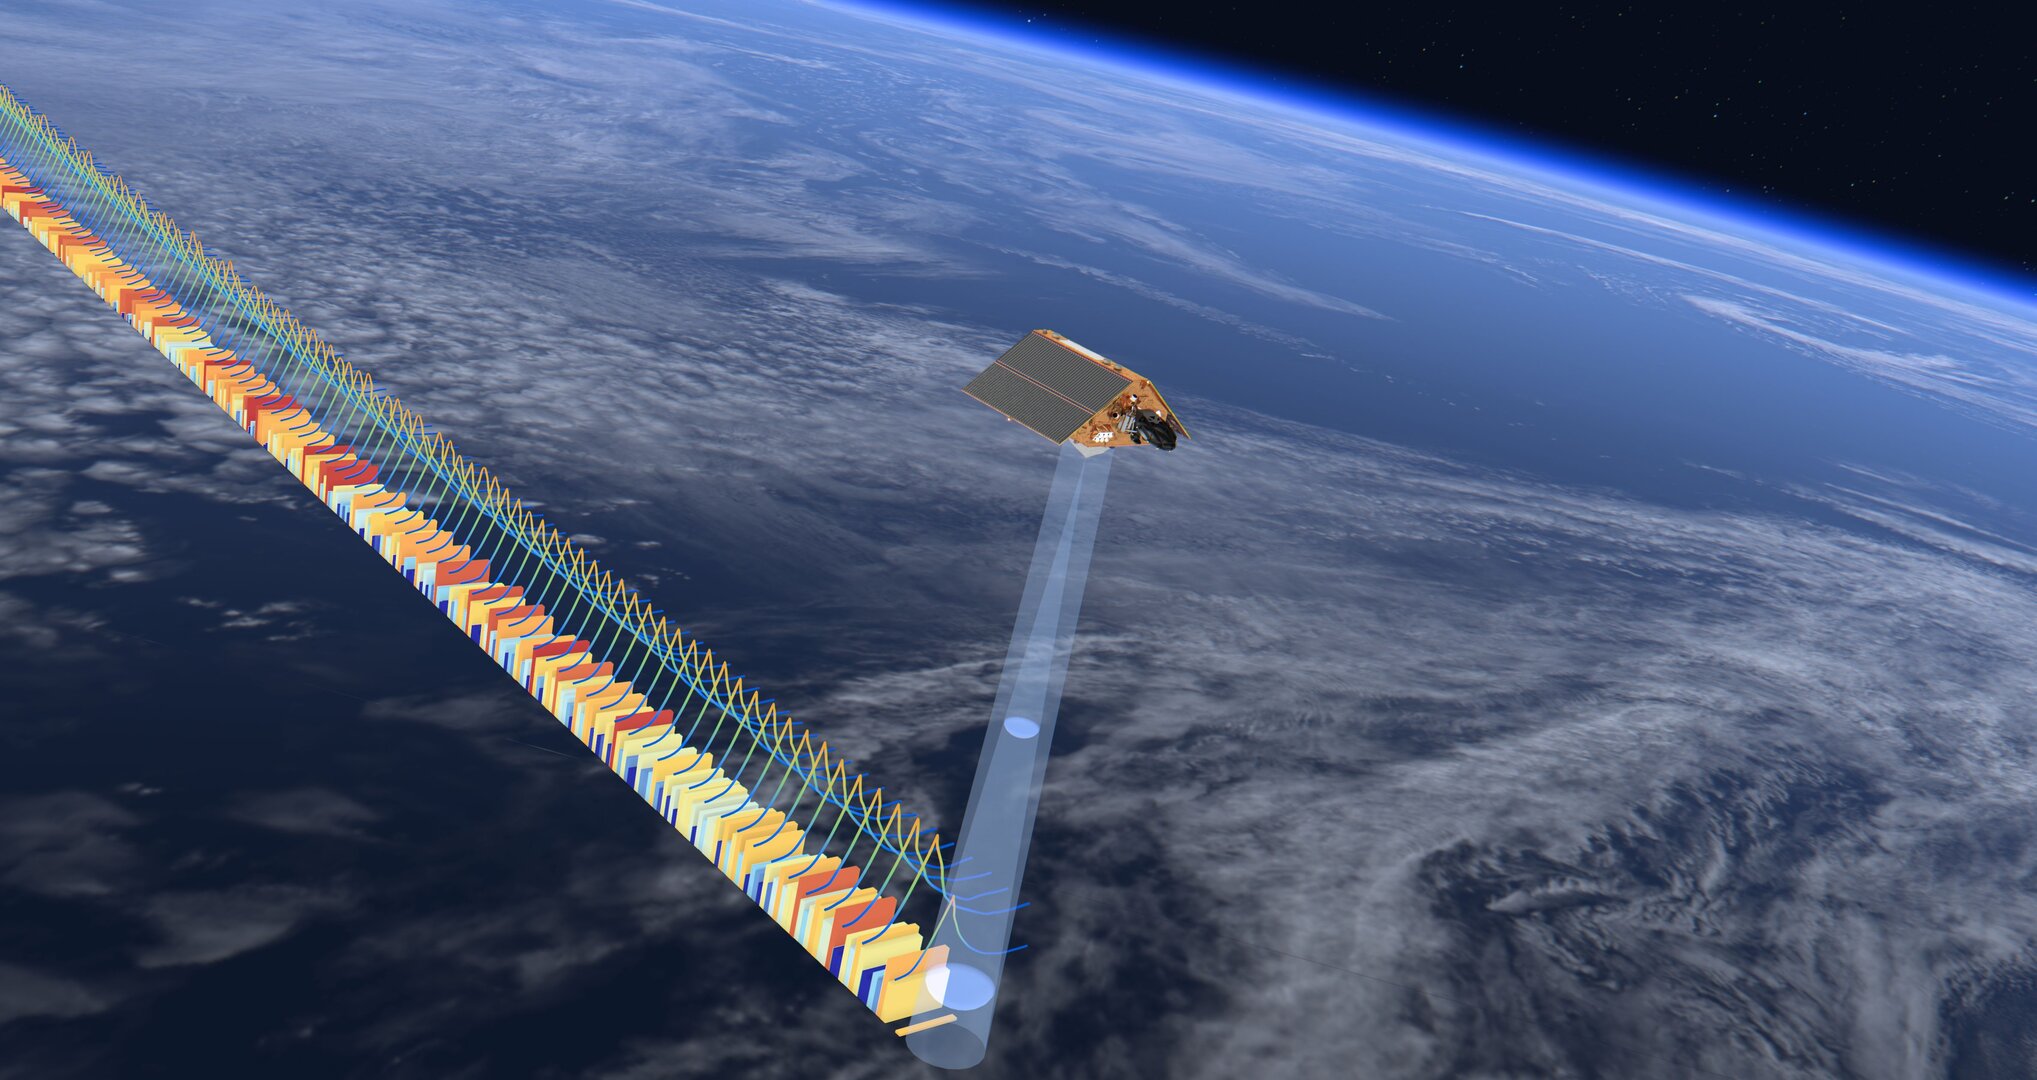 Satelliti come Sentinel 6 Michael Freilich trasportano altimetri avanzati che gli consentono di effettuare misurazioni più precise dei livelli globali del mare rispetto ai suoi predecessori.